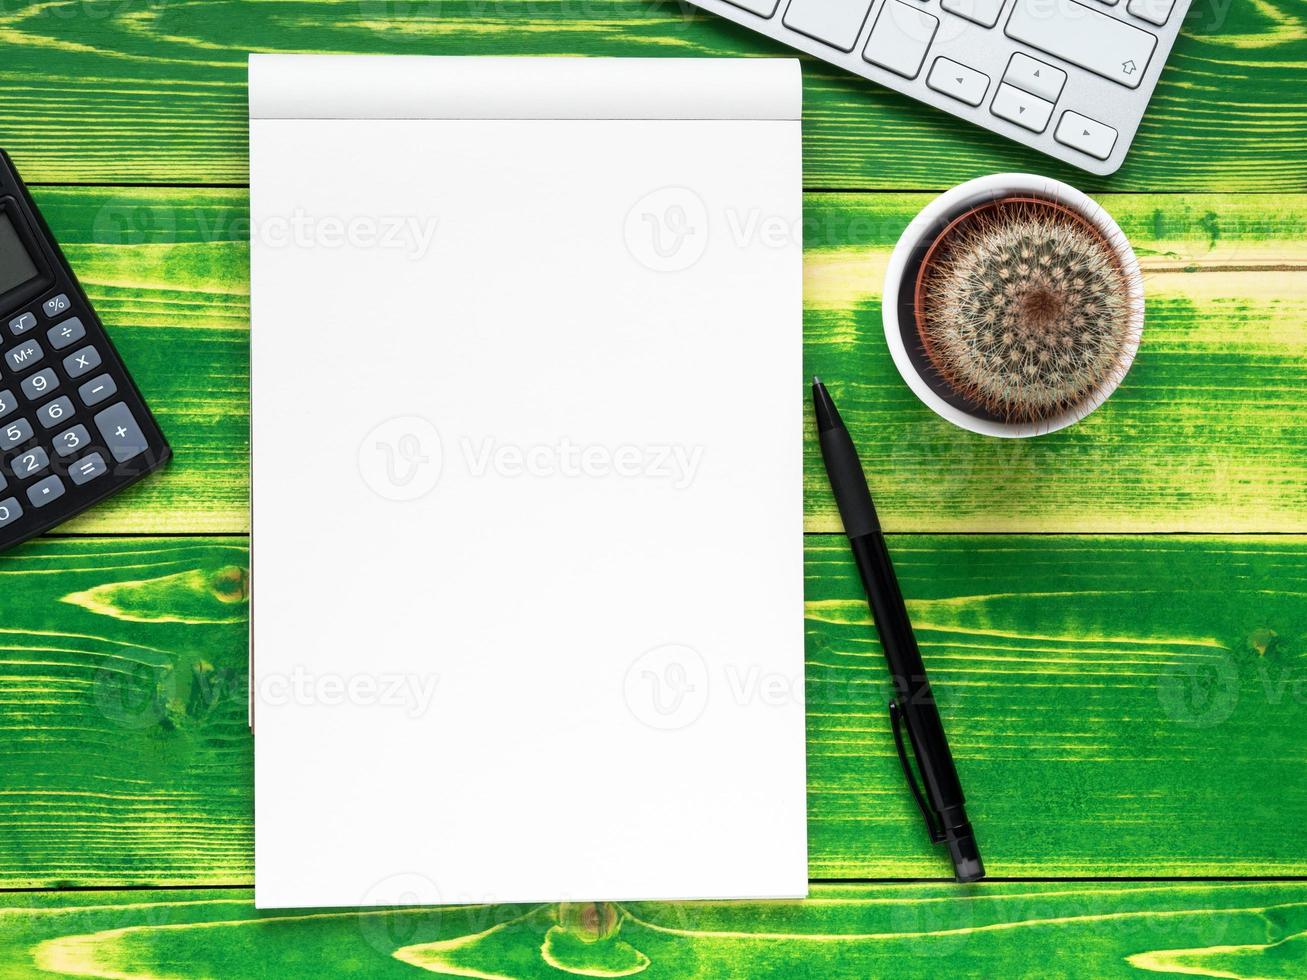 cahier ouvert avec page blanche, stylo, calculatrice, clavier d'ordinateur, cactus photo